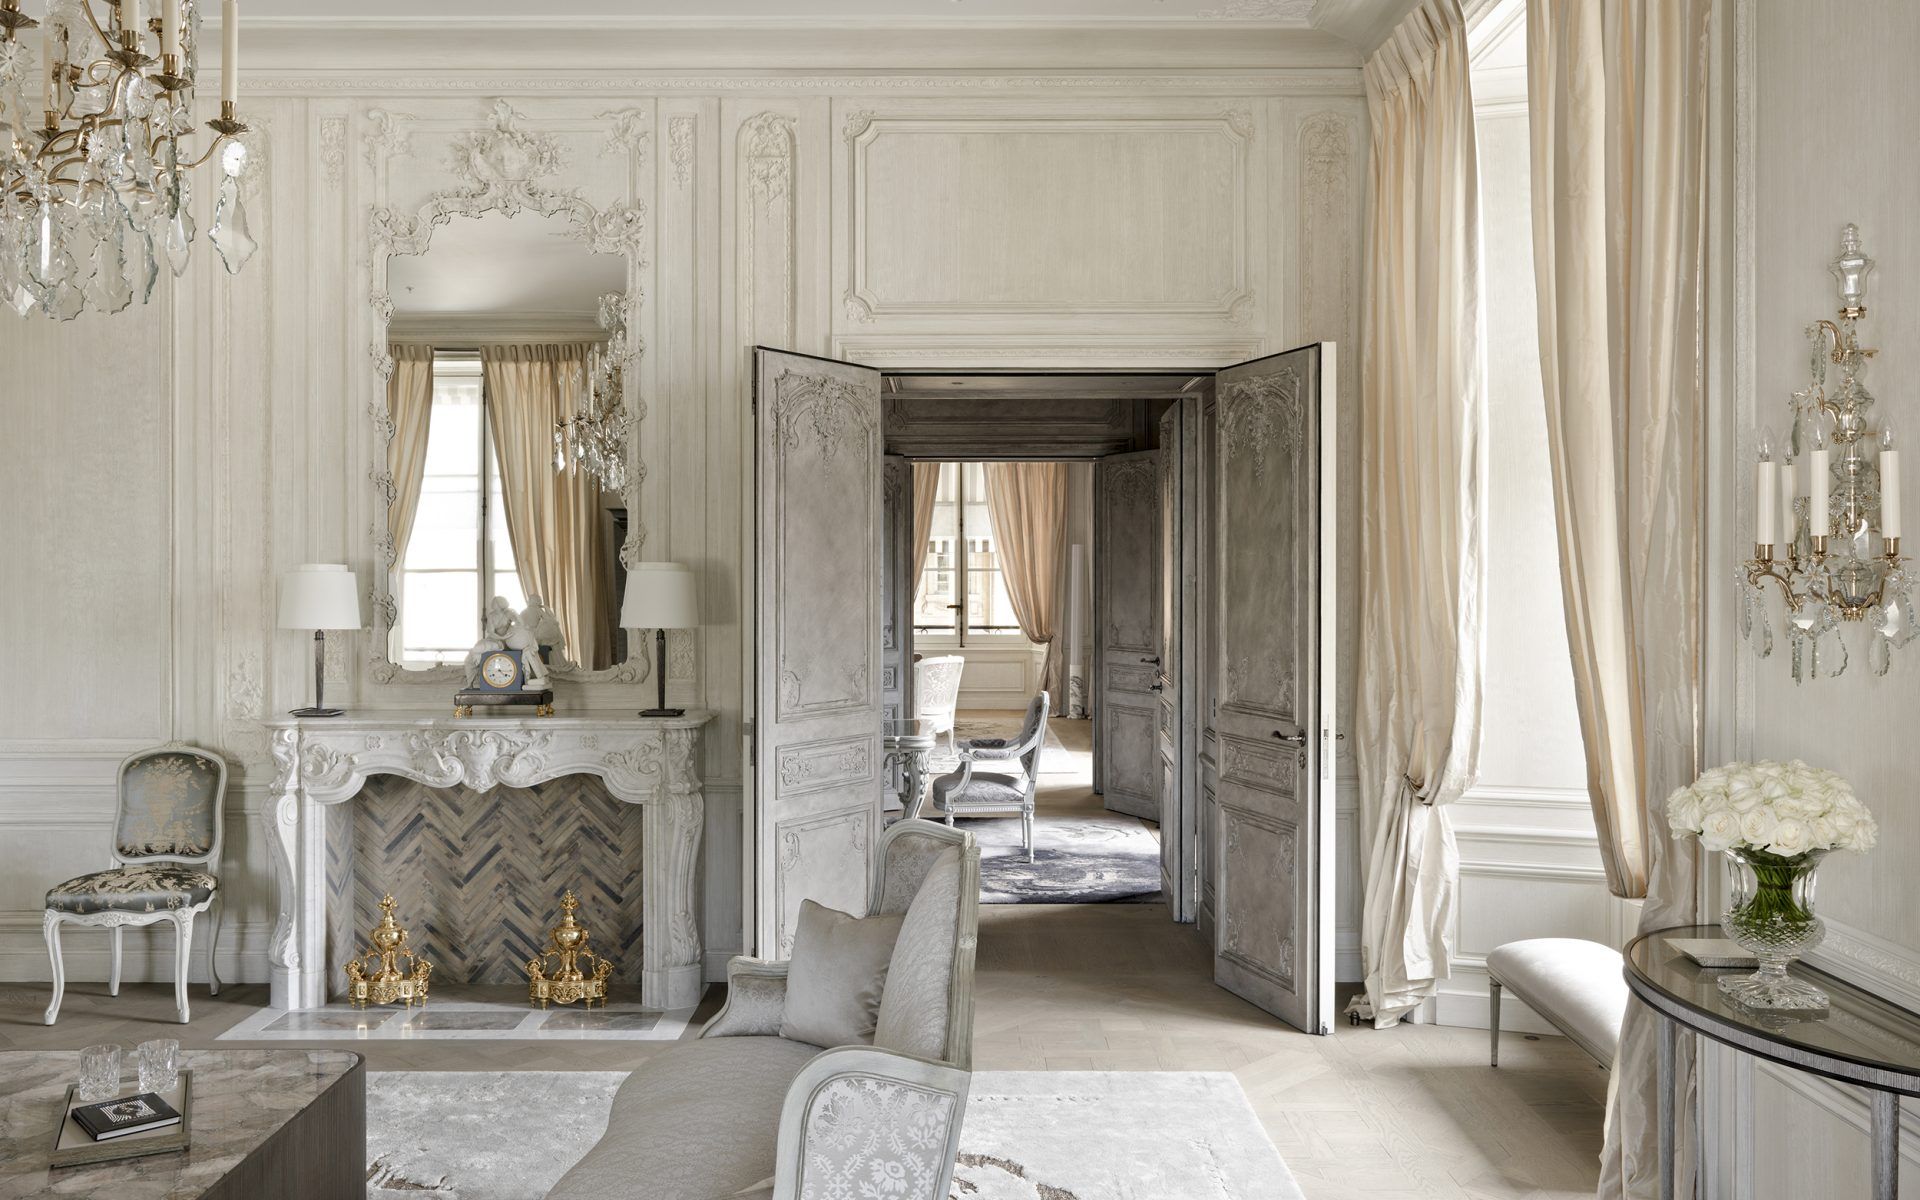 Paris Rooms & Suites, Photos & Info